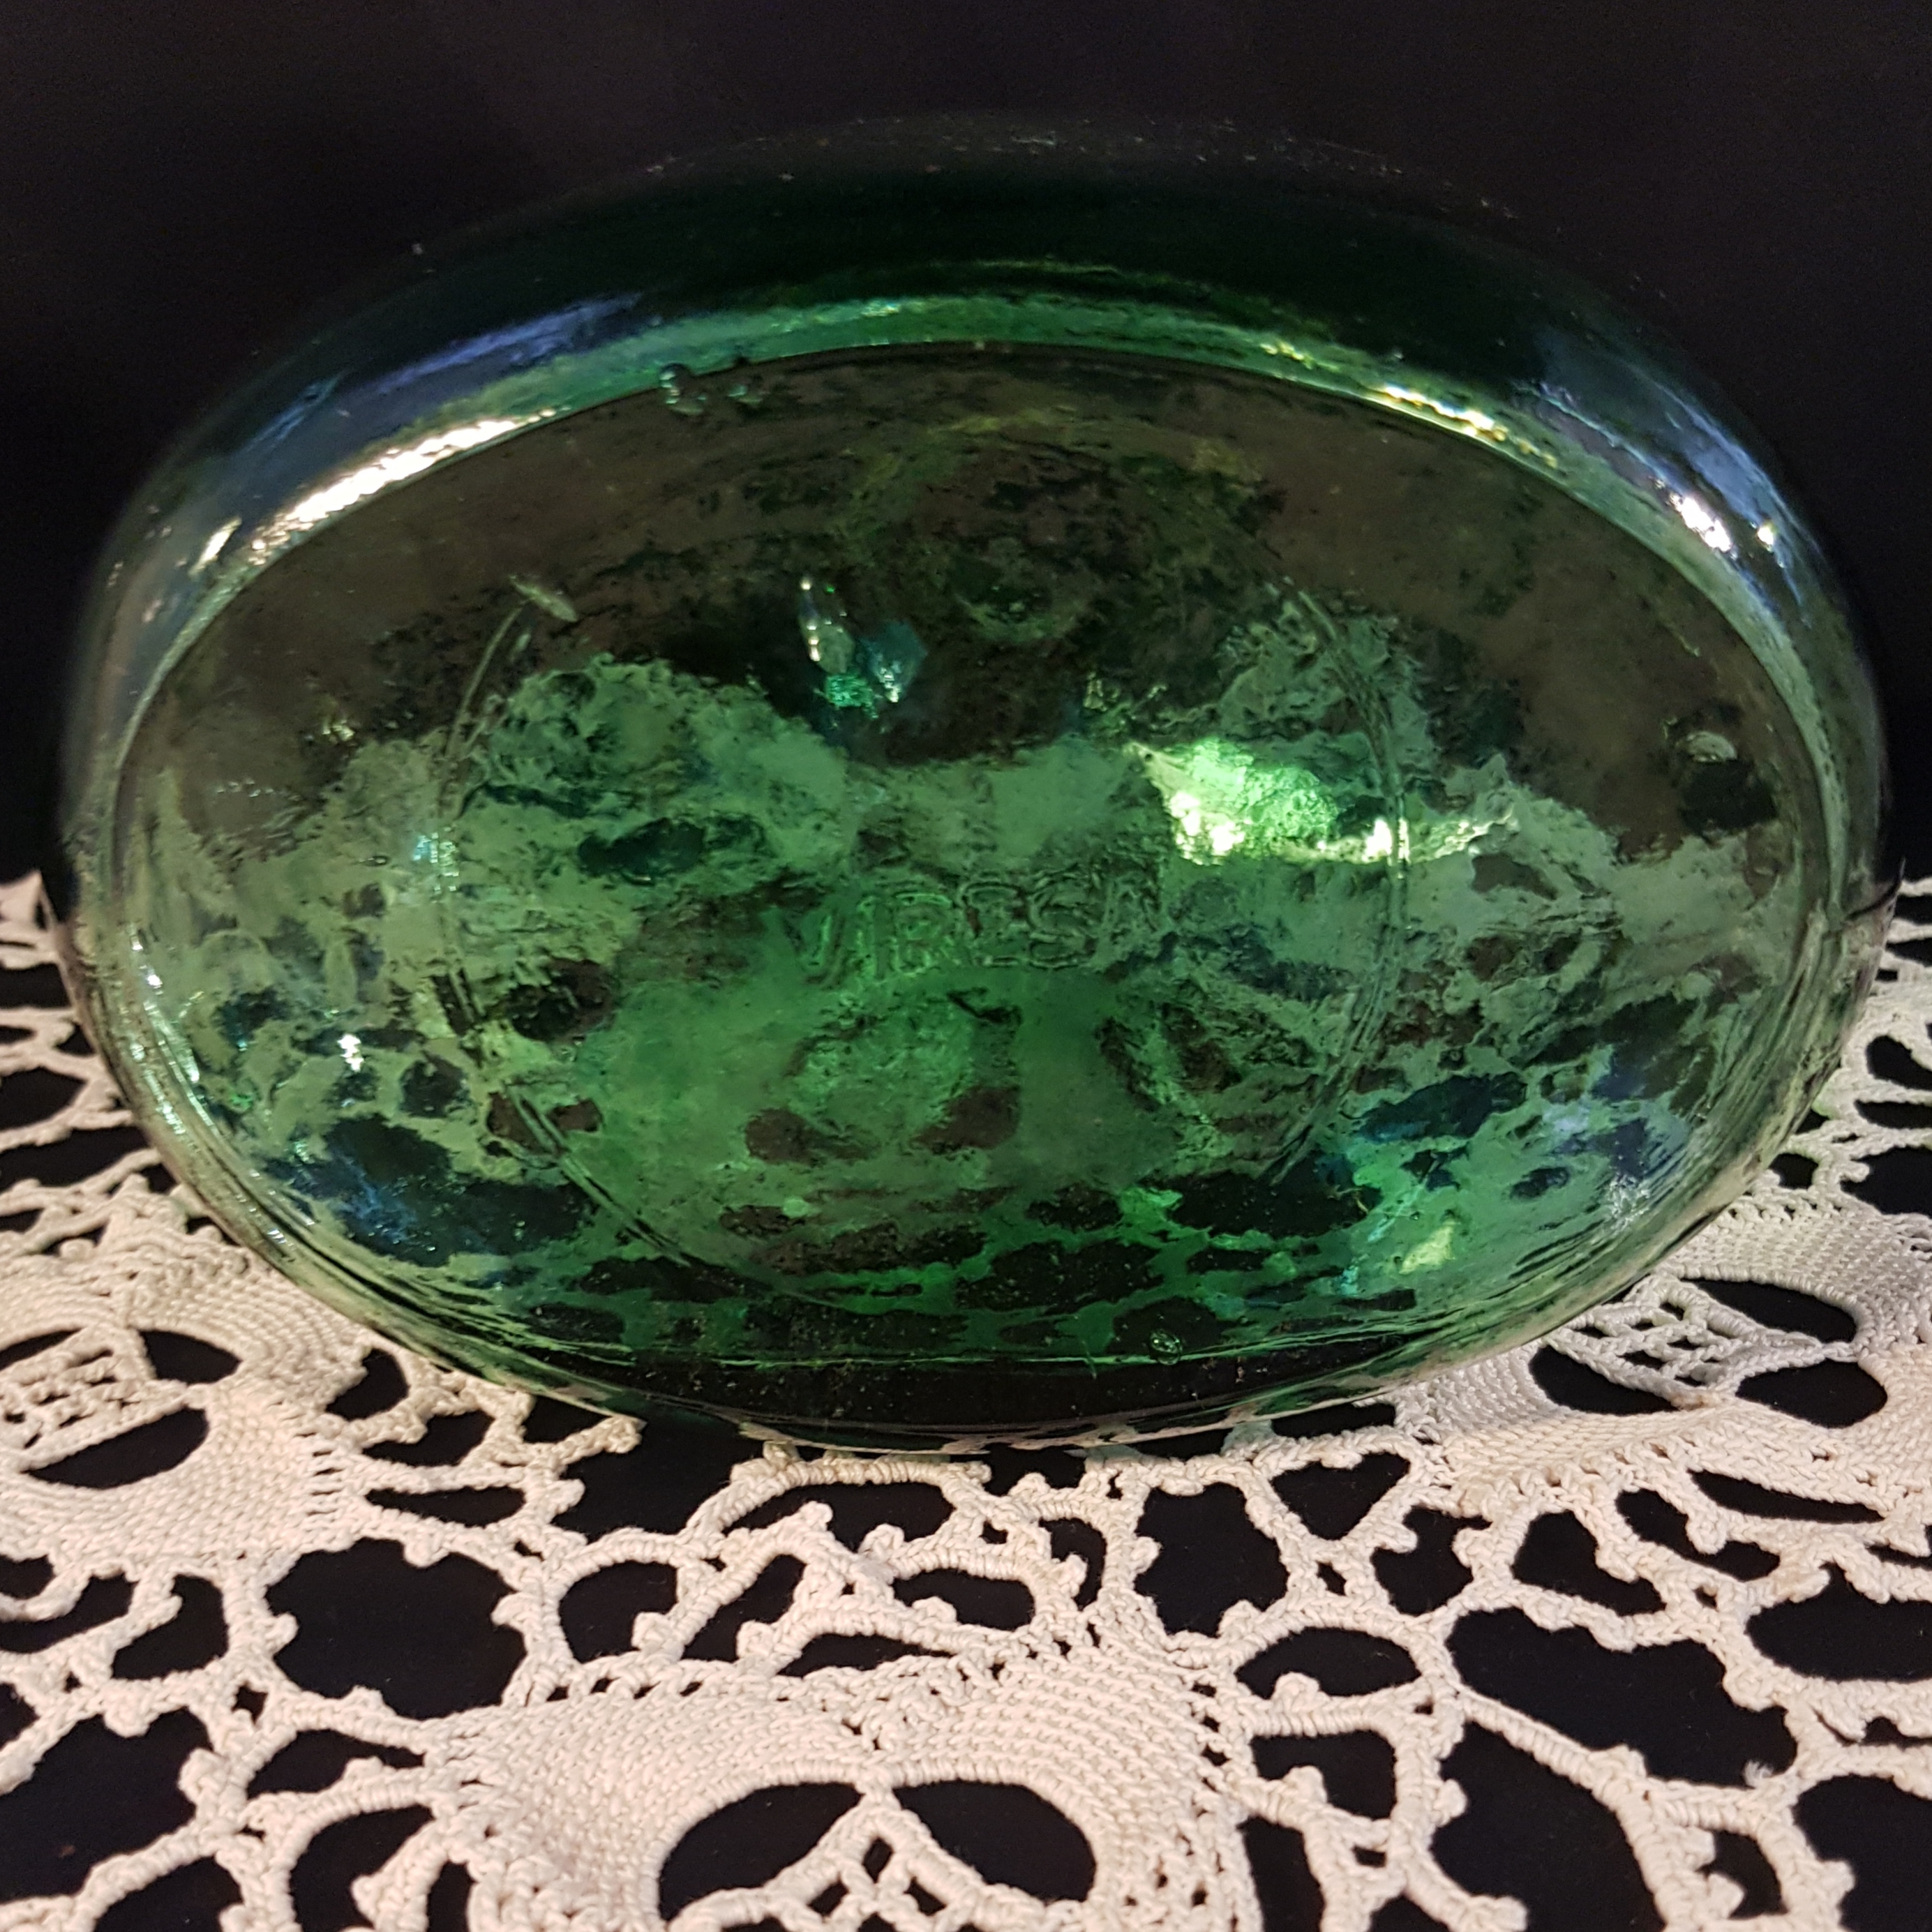 bouteille verre decorative verte merveille et bout de chandelle 7